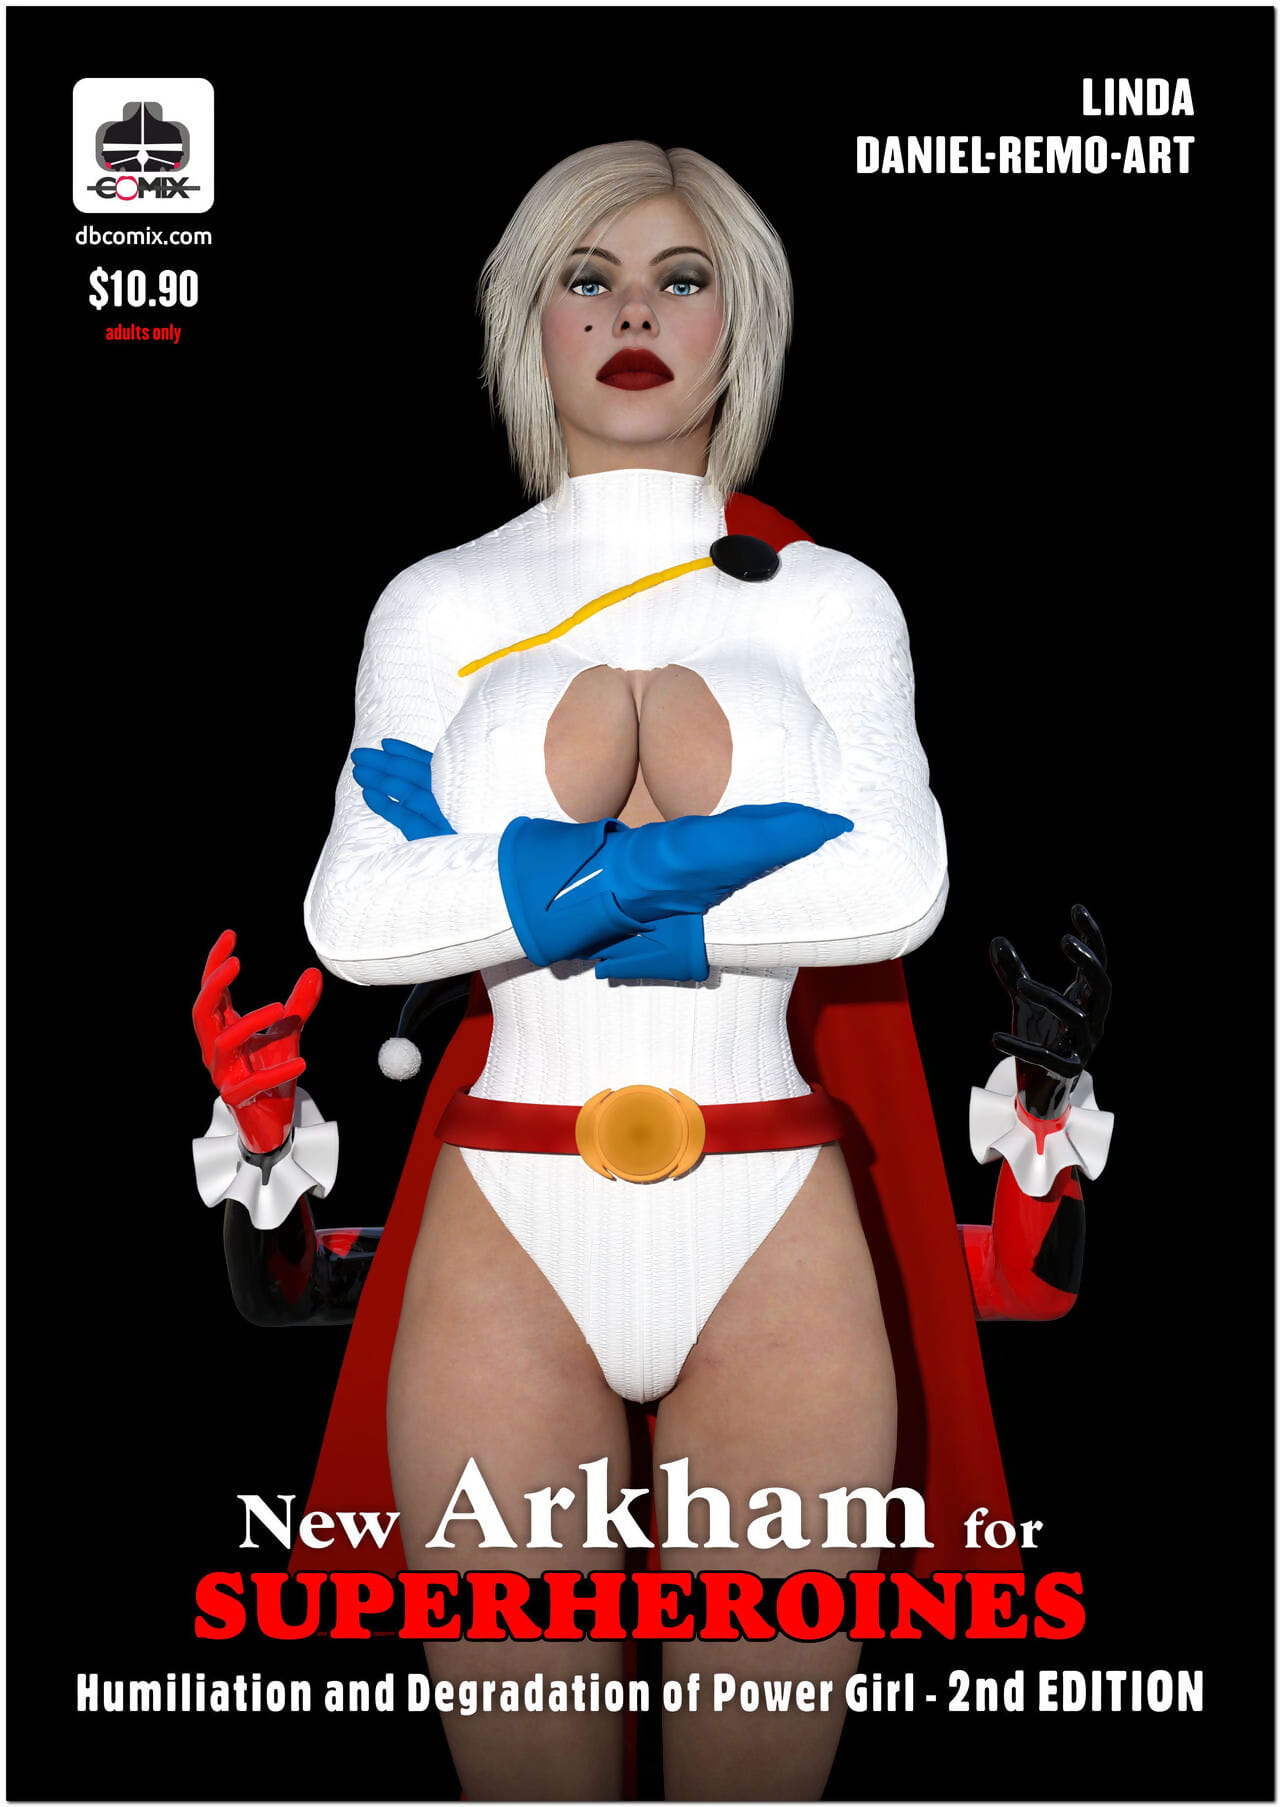 mới arkham cho superheroines 1 2nd Bản nhục và degradation những Sức mạnh :cô gái: page 1